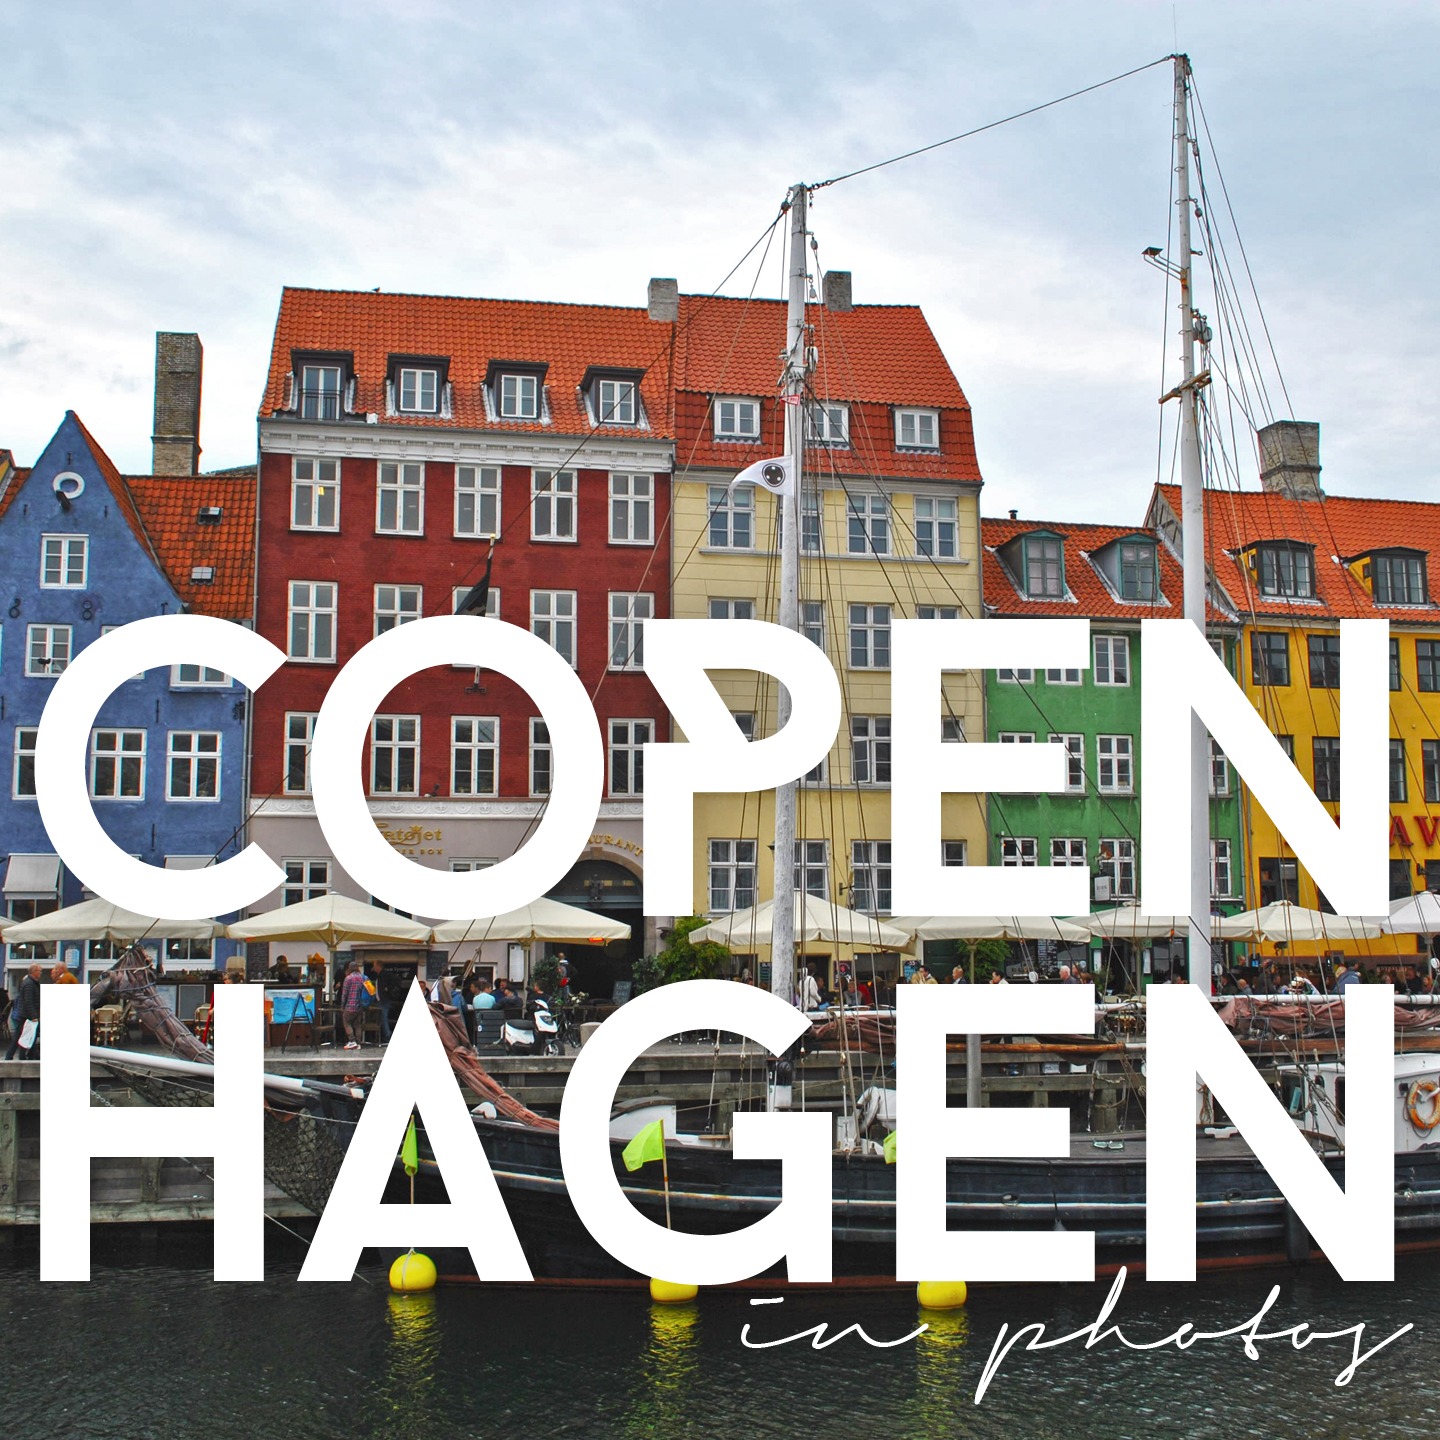 Copenhagen, in photos